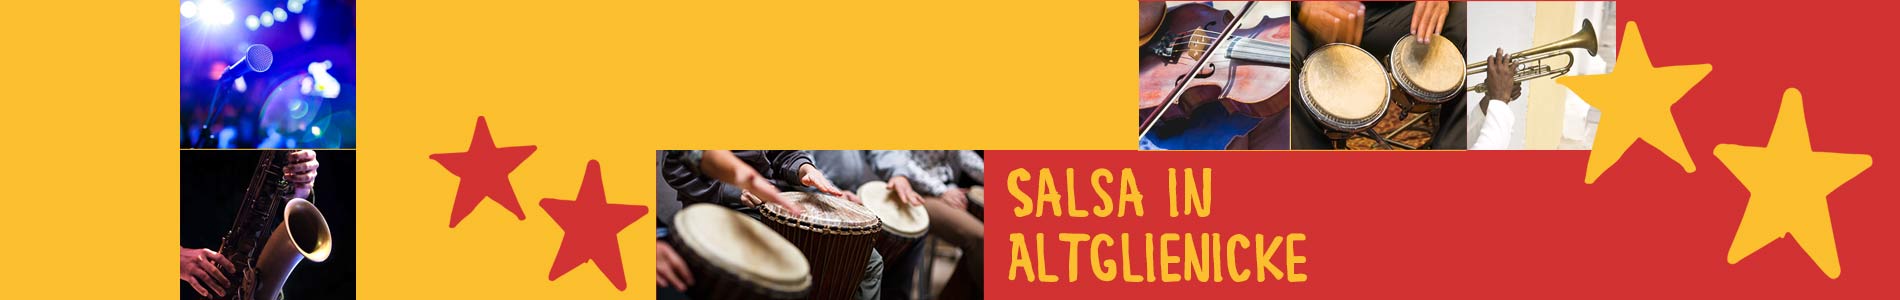 Salsa in Altglienicke – Salsa lernen und tanzen, Tanzkurse, Partys, Veranstaltungen